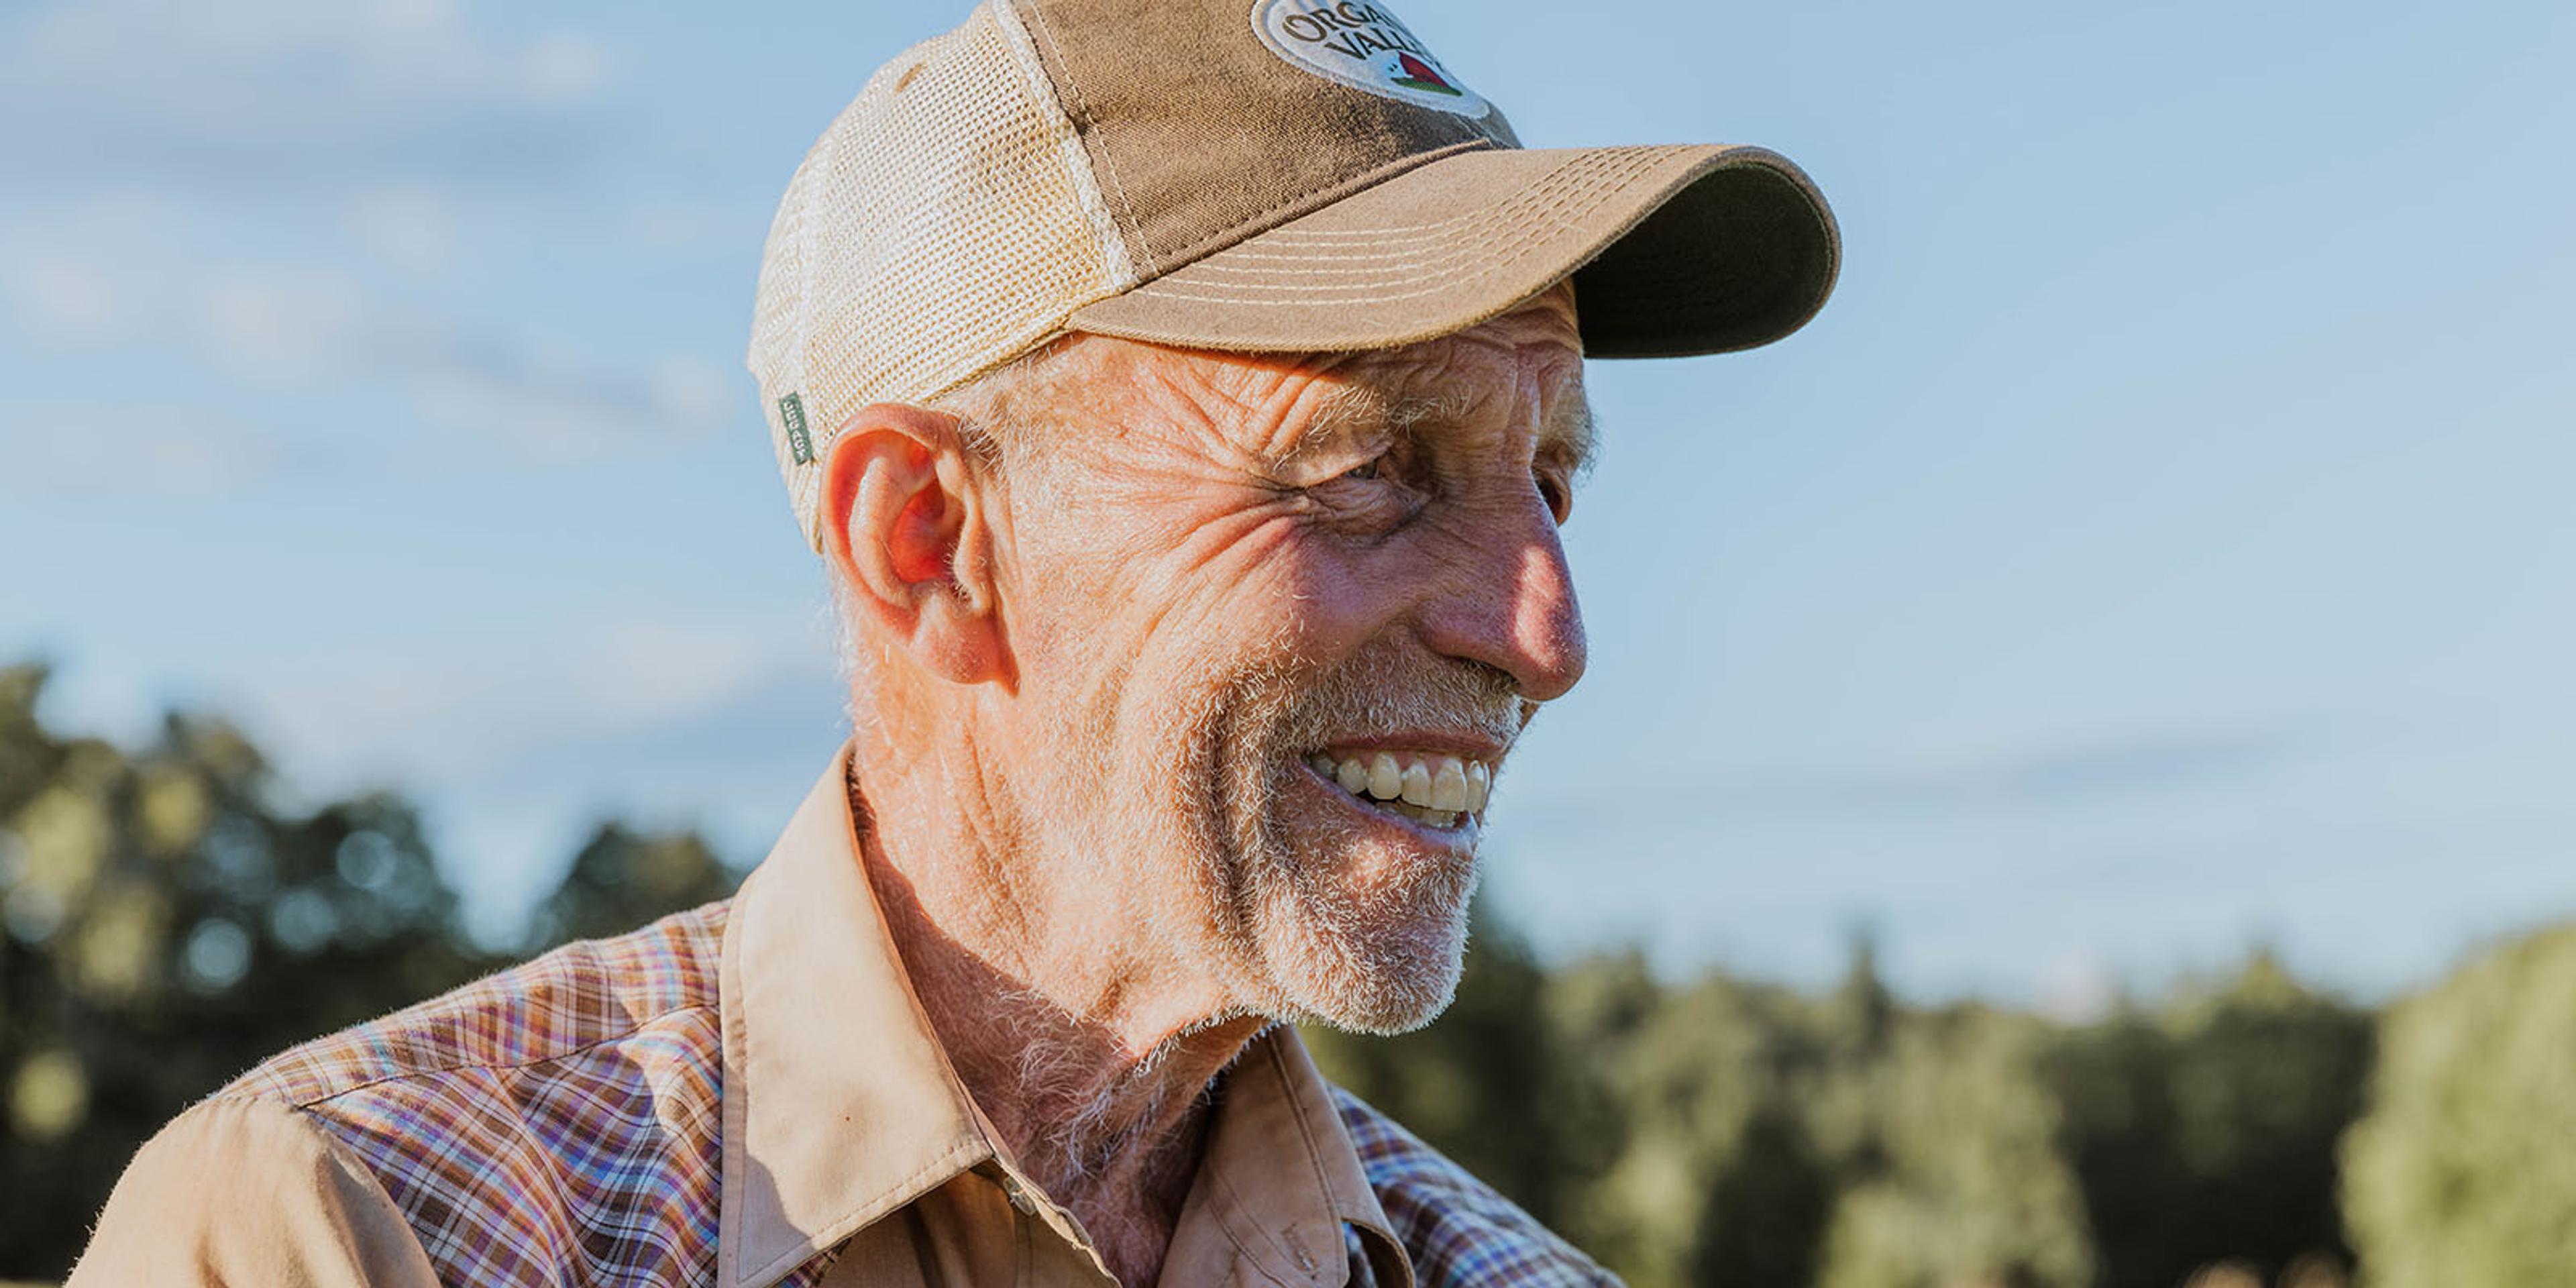 A Vermont farmer smiles.